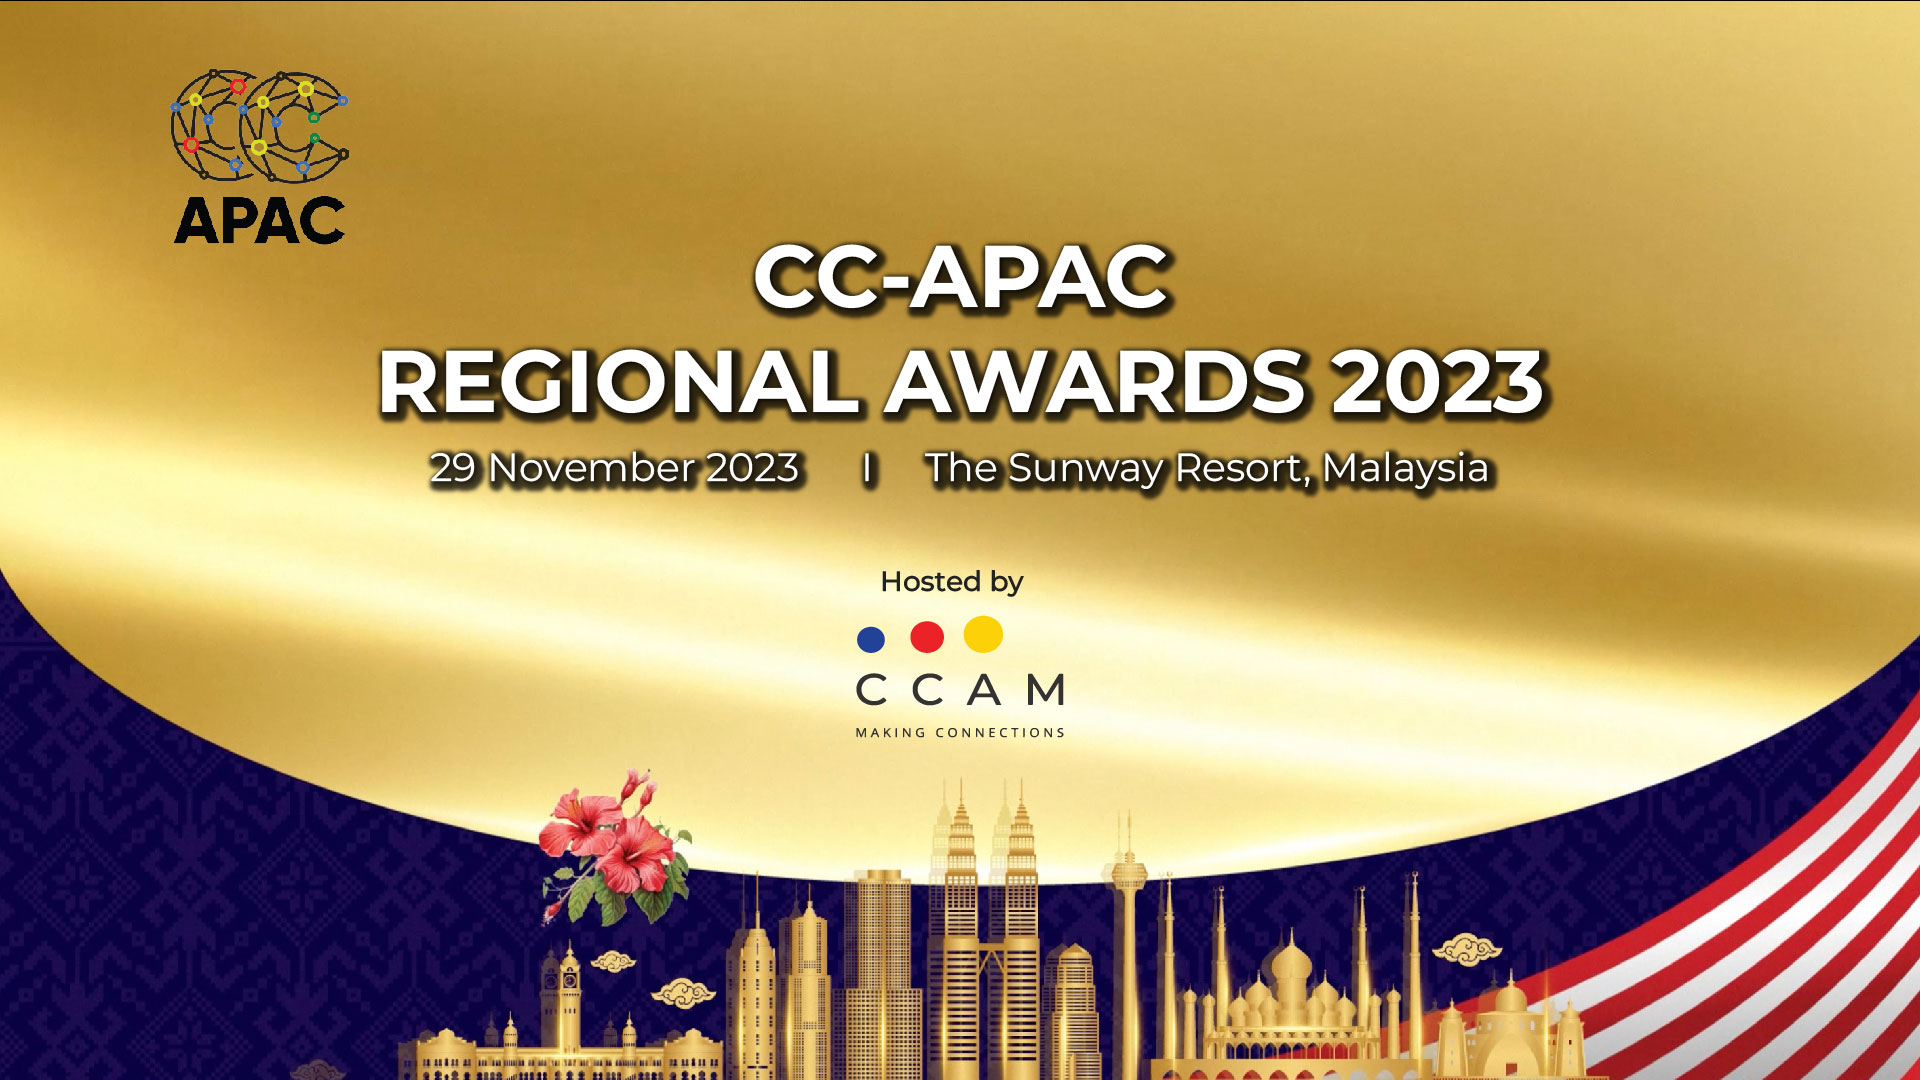 CC-APAC Regional Award 2023 - CCAM - Contact Centre Association of Malaysia